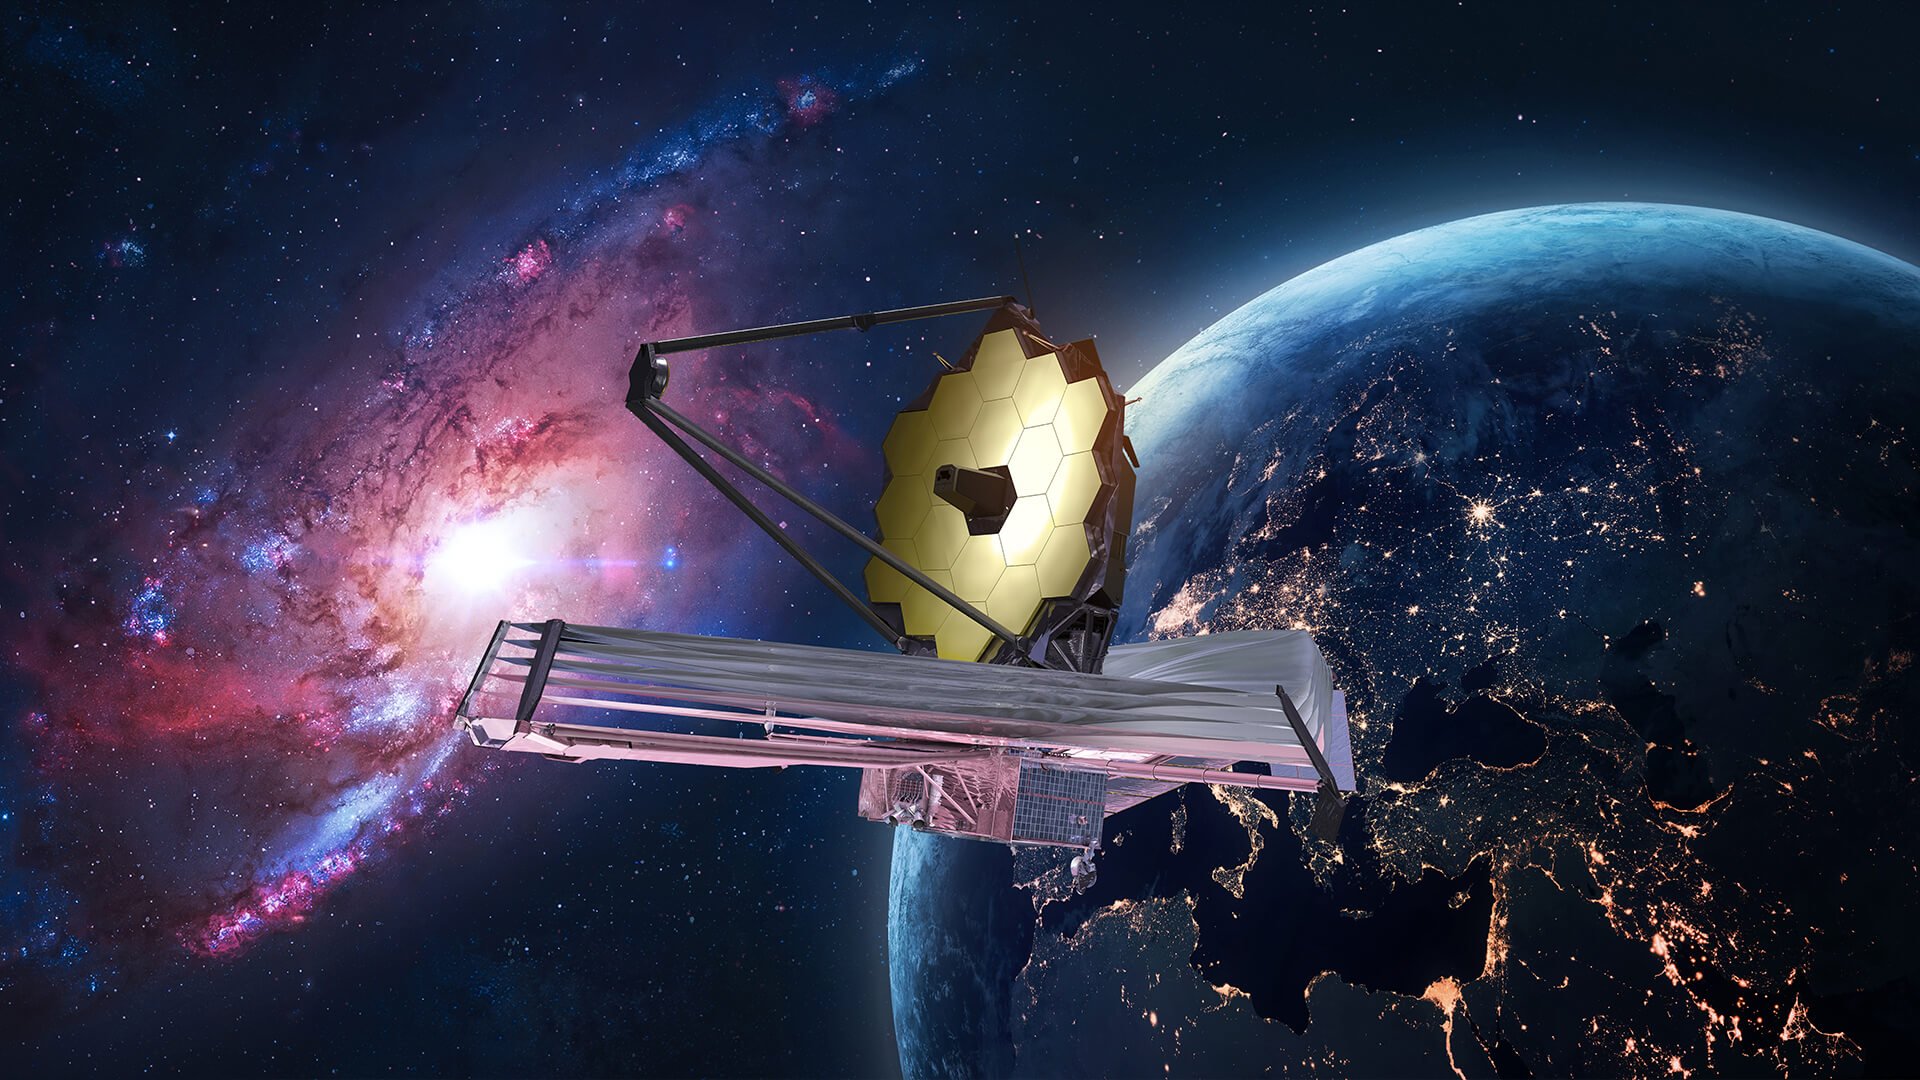 Правда ли, что телескоп Джеймса Уэбба обнаружил жизнь за пределами Земли? Космический телескоп Джеймса Уэбба обнаружил признаки жизни на далекой экзопланете. Так ли это? Фото.